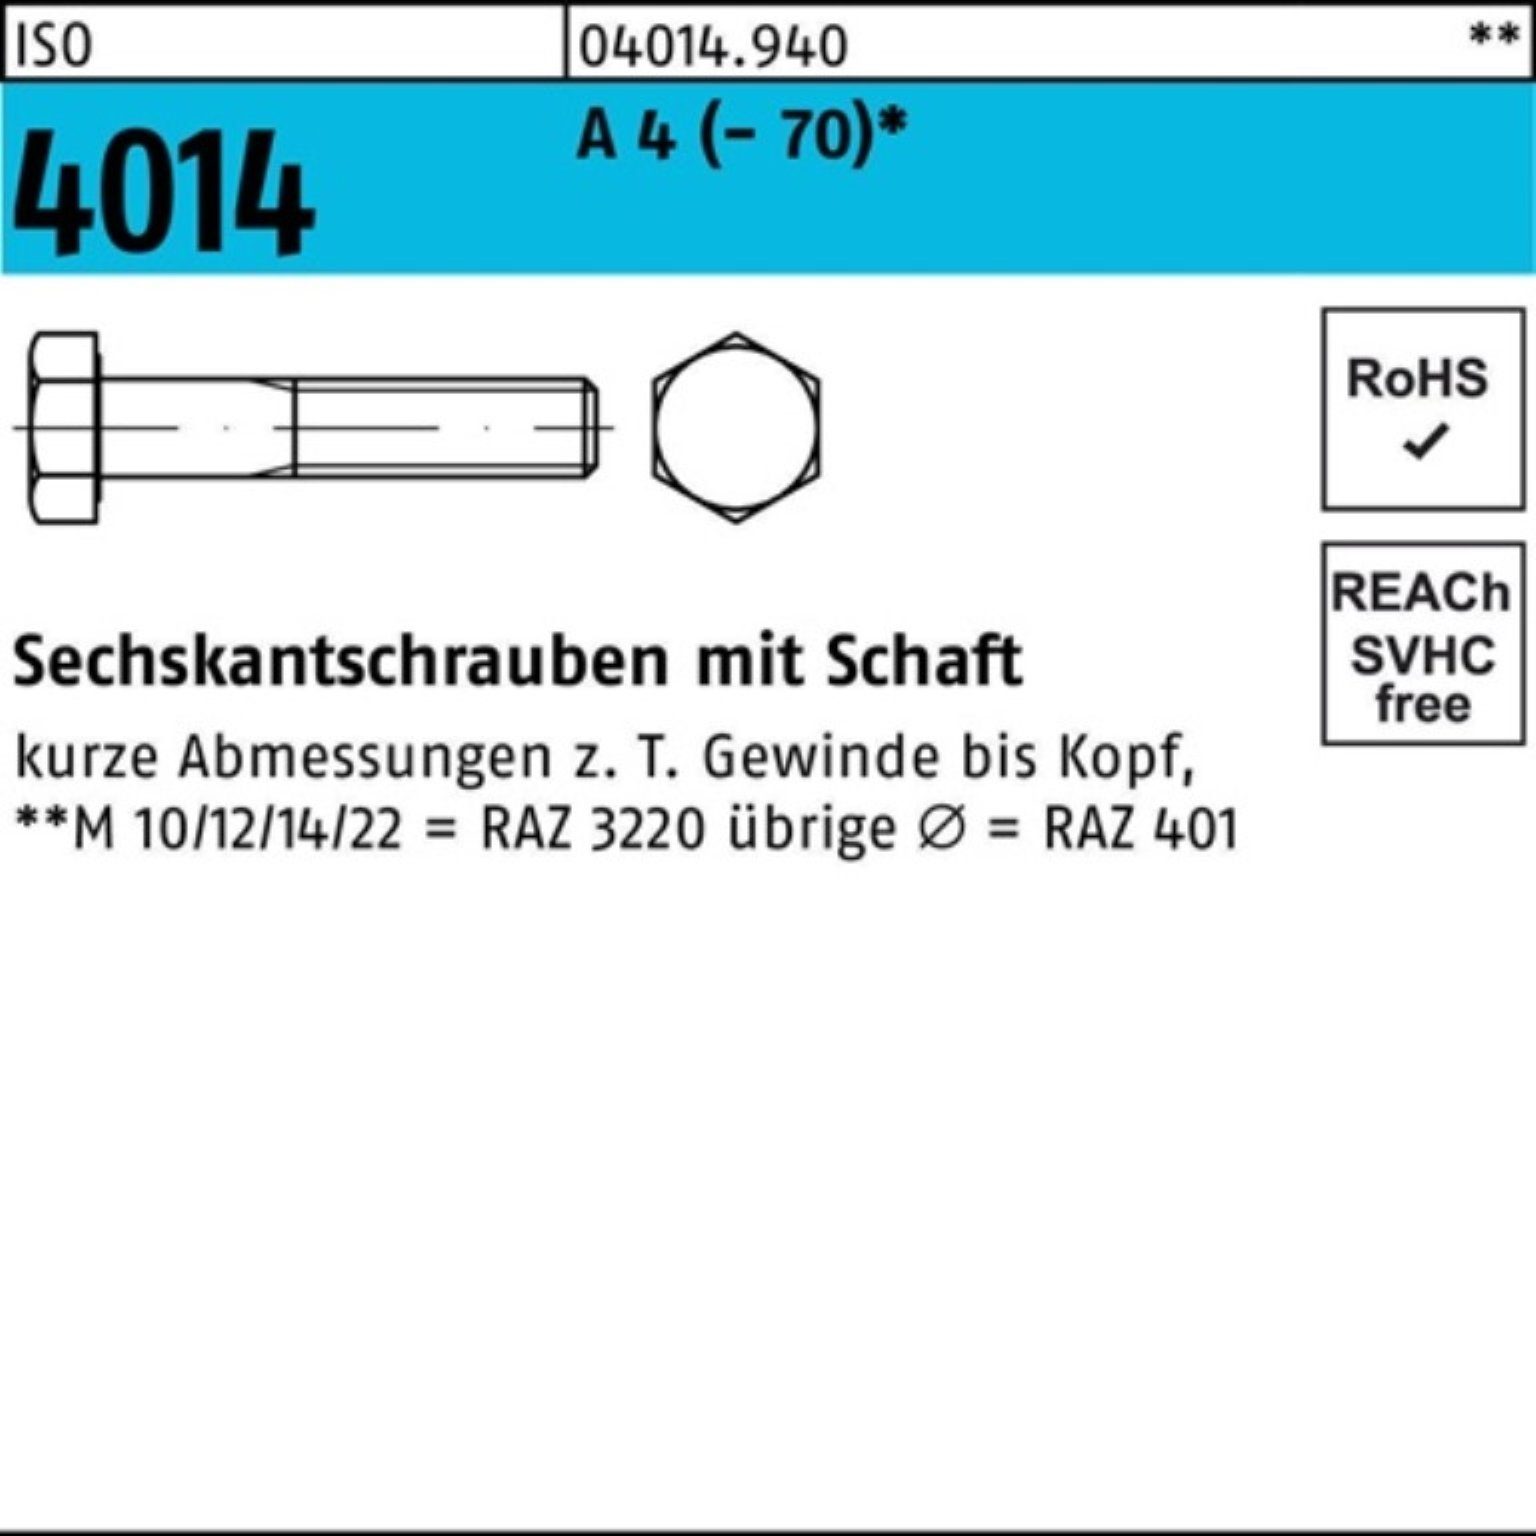 Pack 25 100er Schaft Sechskantschraube M14x 4 4014 A Sechskantschraube Bufab (70) ISO St 130